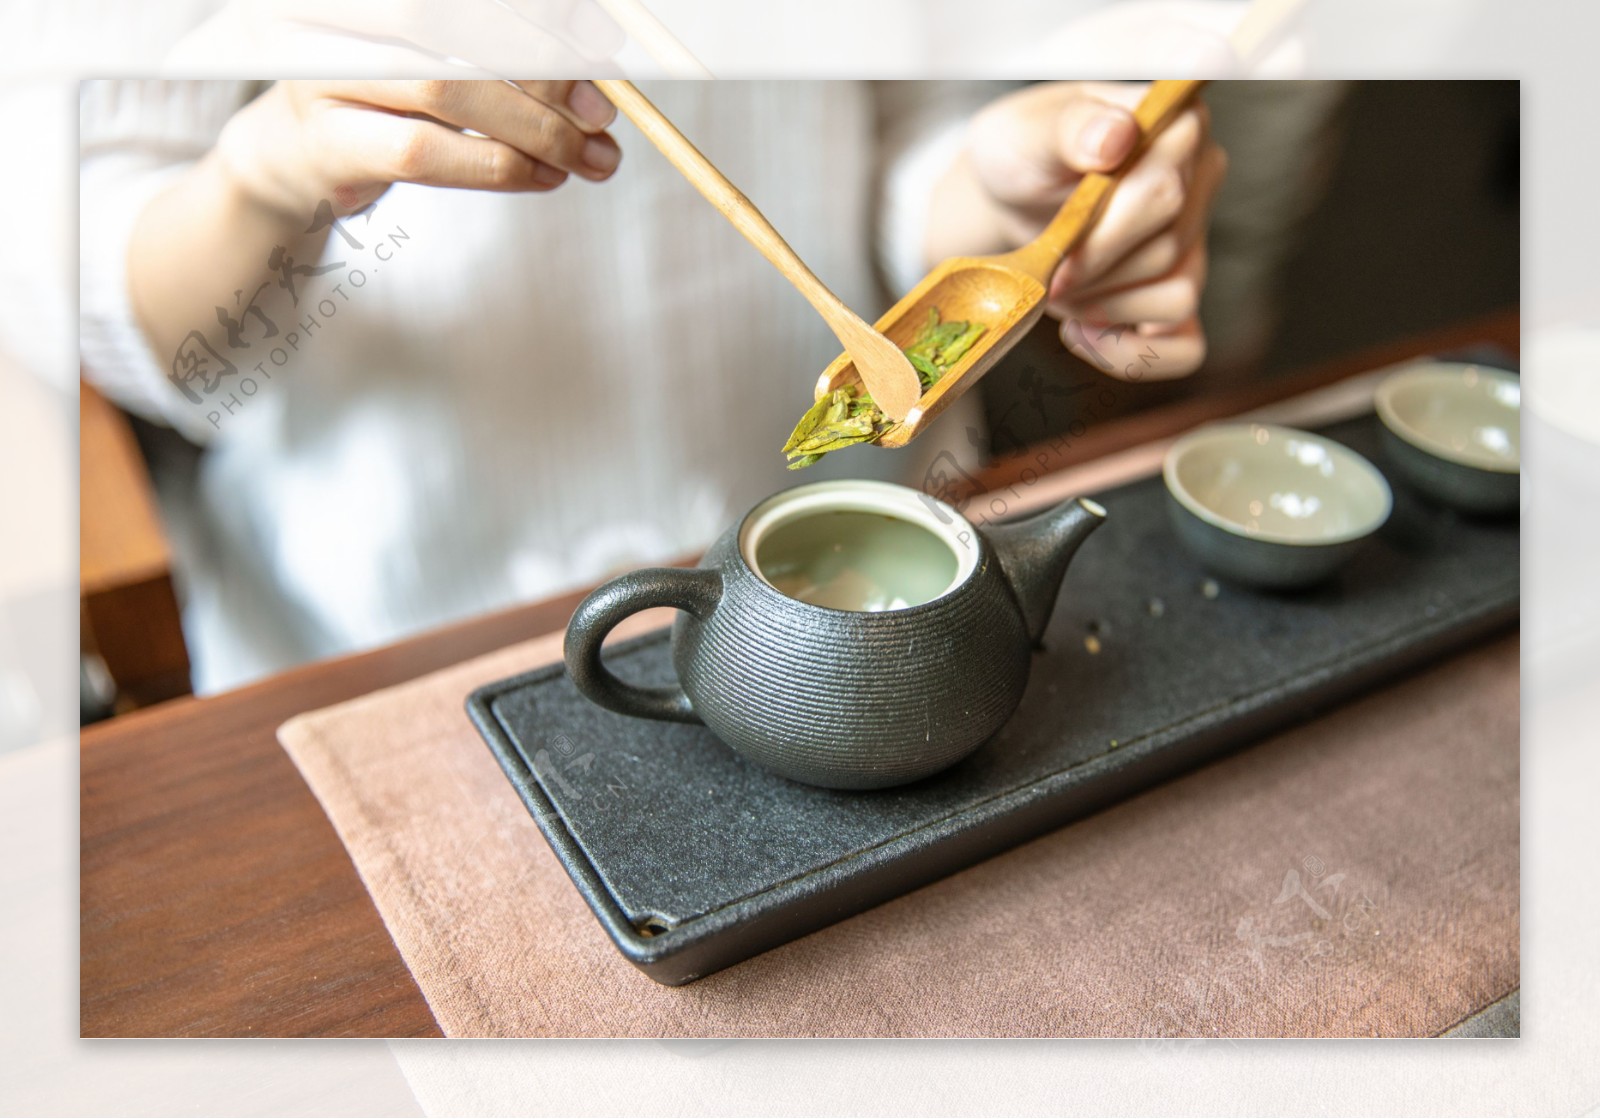 茶艺茶道茶文化